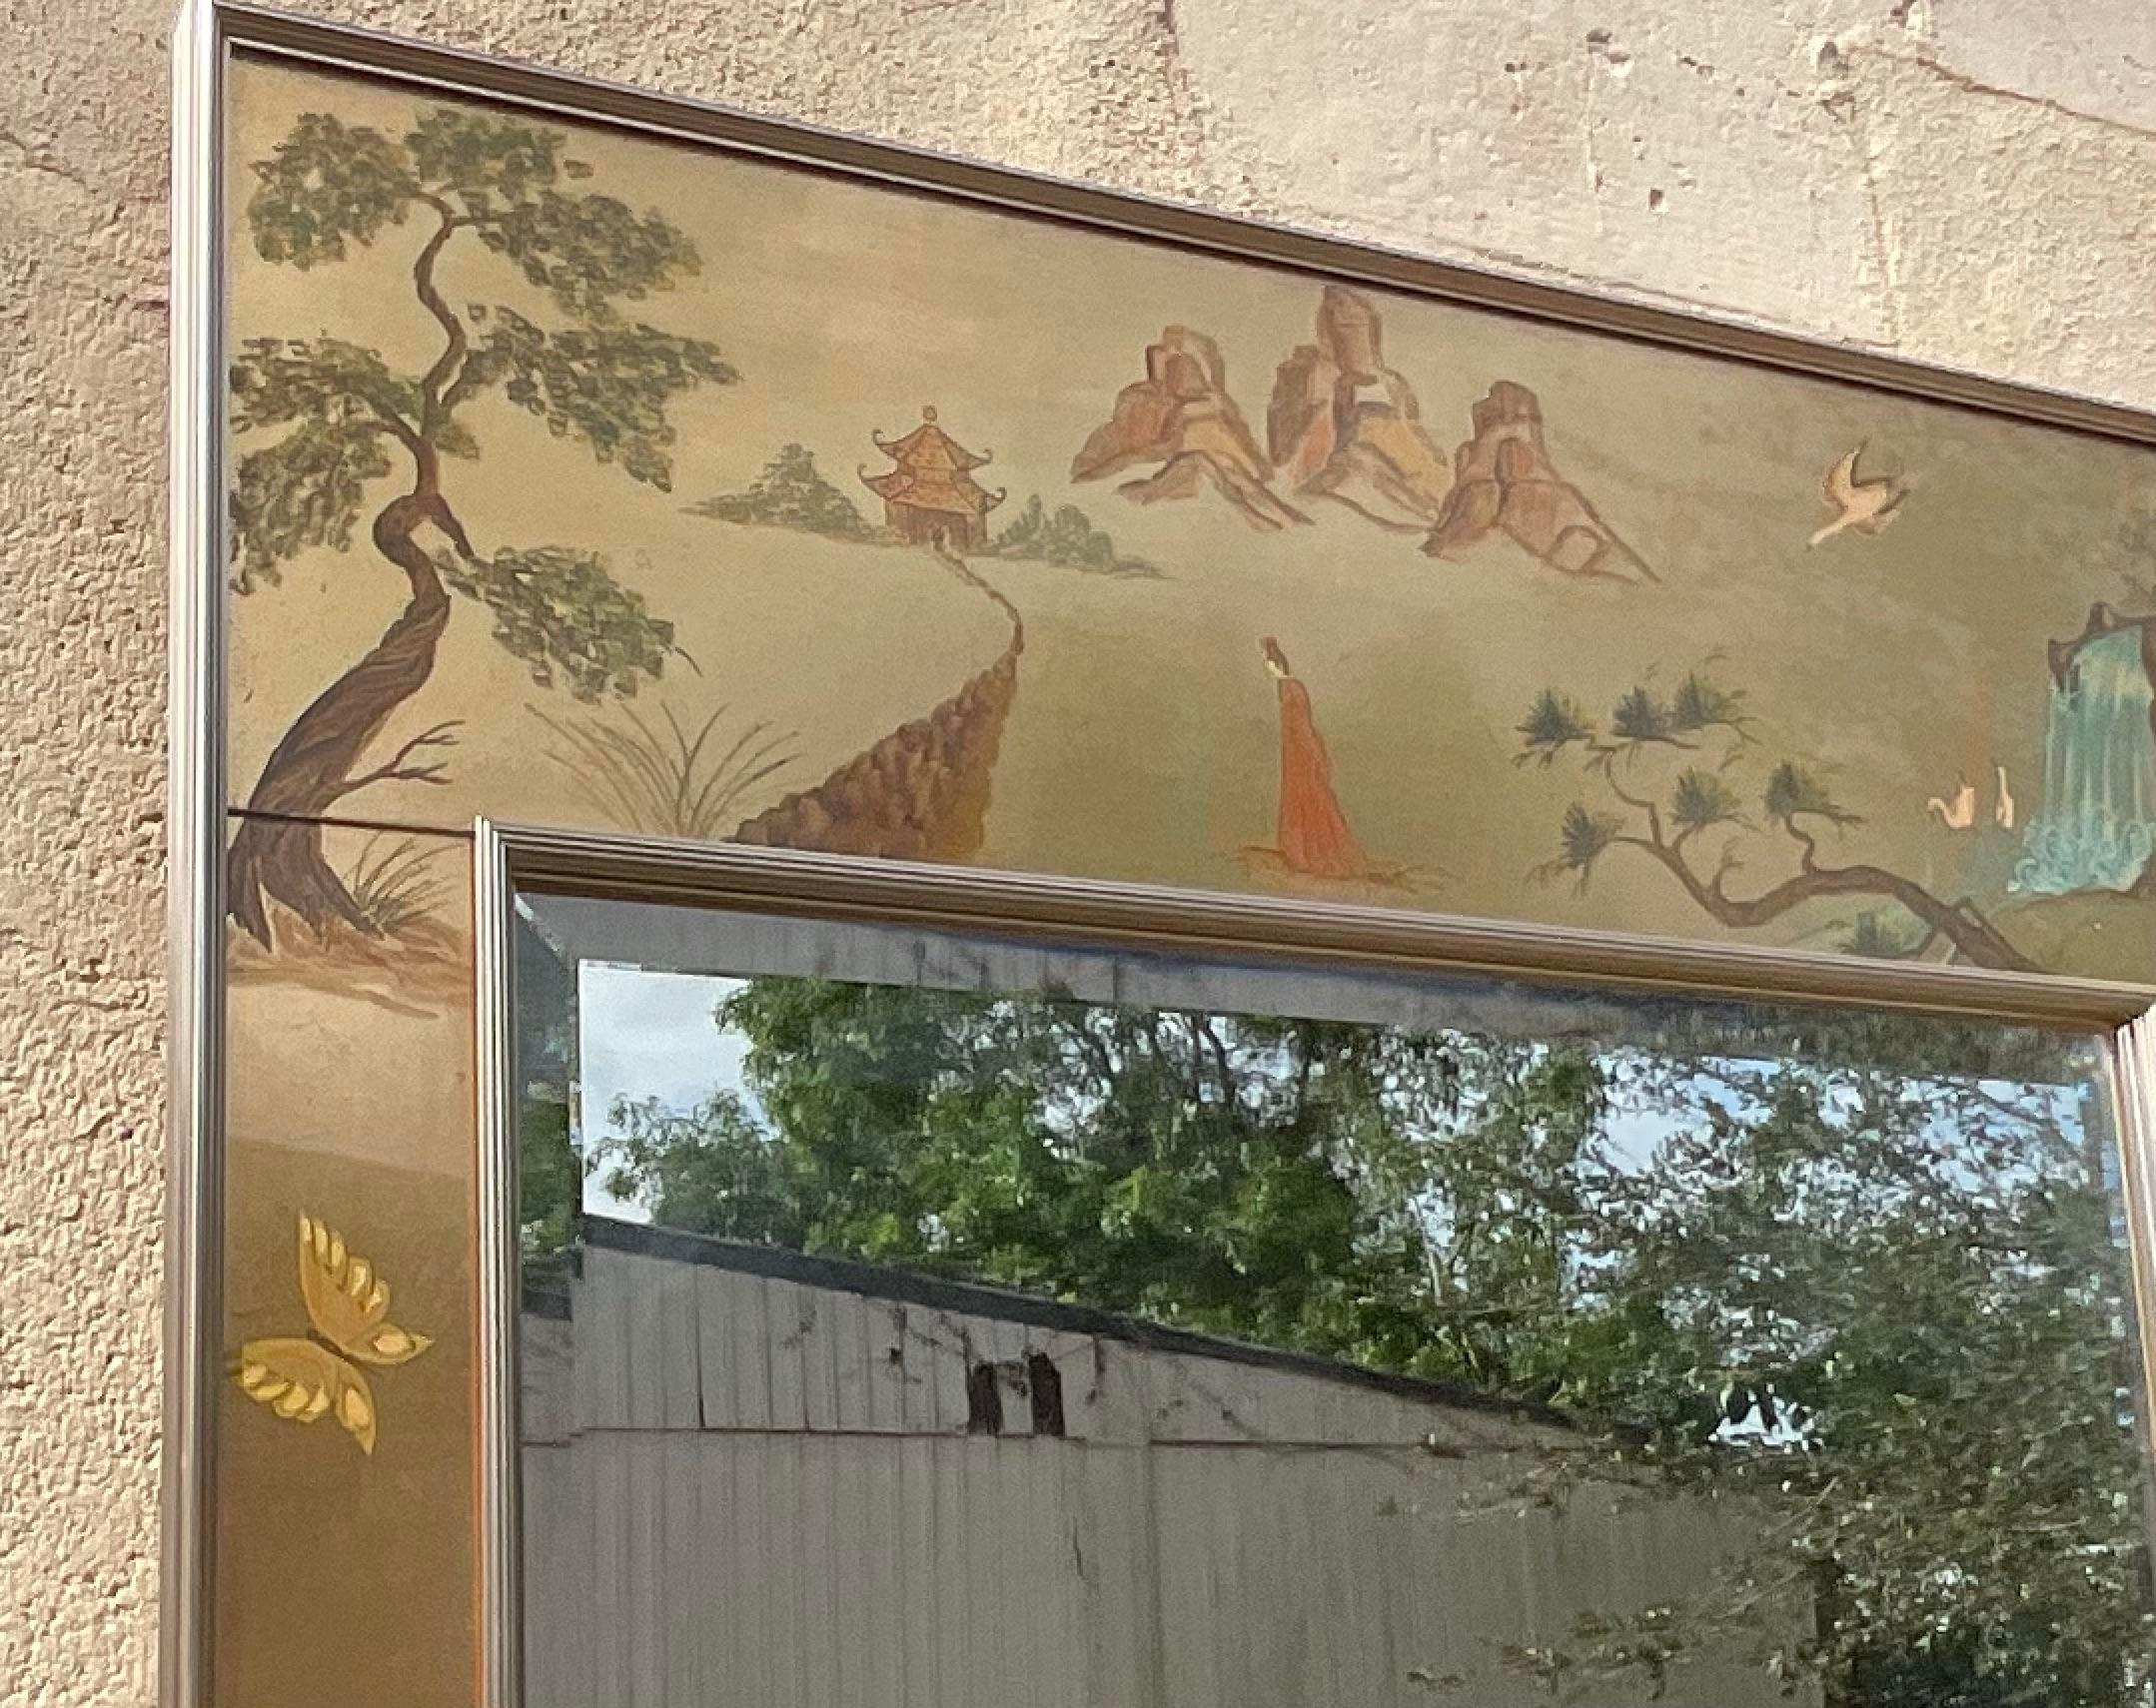 Eine atemberaubende Vintage Reverse gemalt Glas Wandspiegel. Die begehrte Eglomise-Technik in einem prächtigen asiatischen Hirtendesign. Hergestellt von der kultigen LaBarge-Gruppe und mit einem Etikett auf der Rückseite versehen. Erworben aus einem